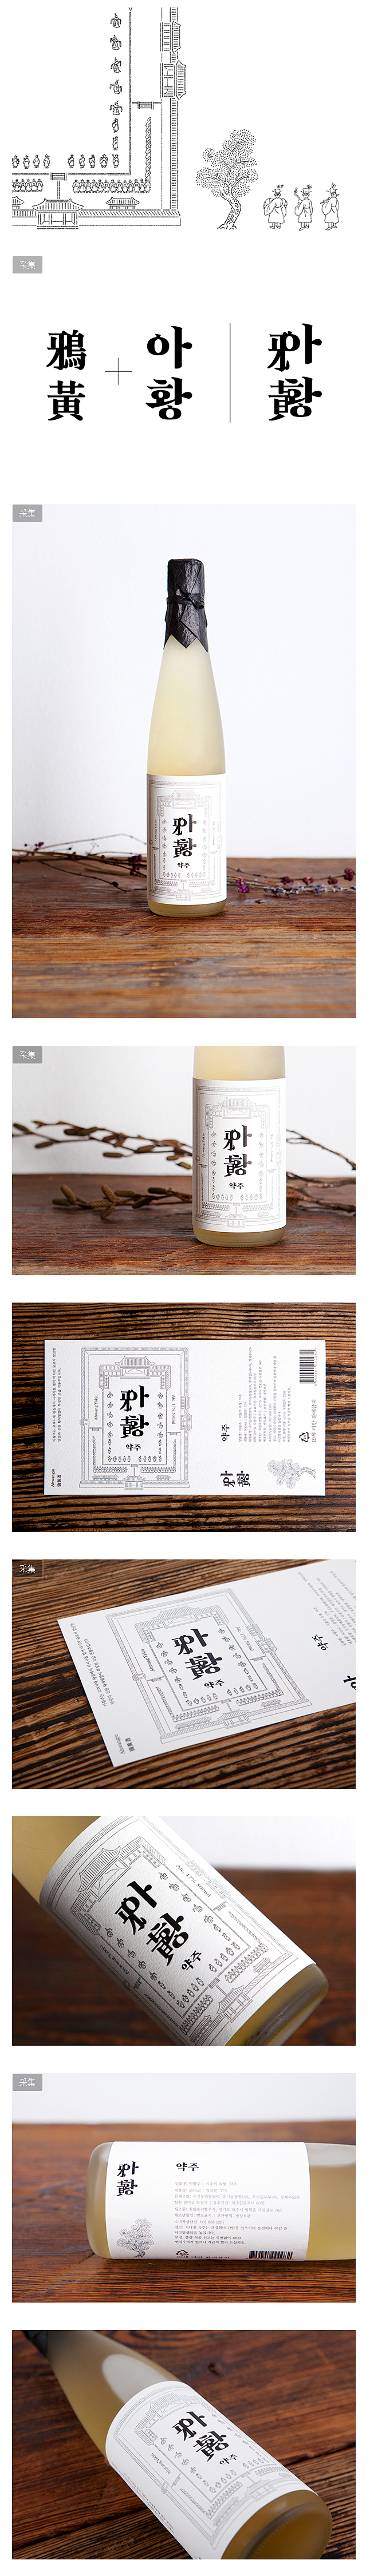 韩国Ahwang-ju米酒包装设计 - ...